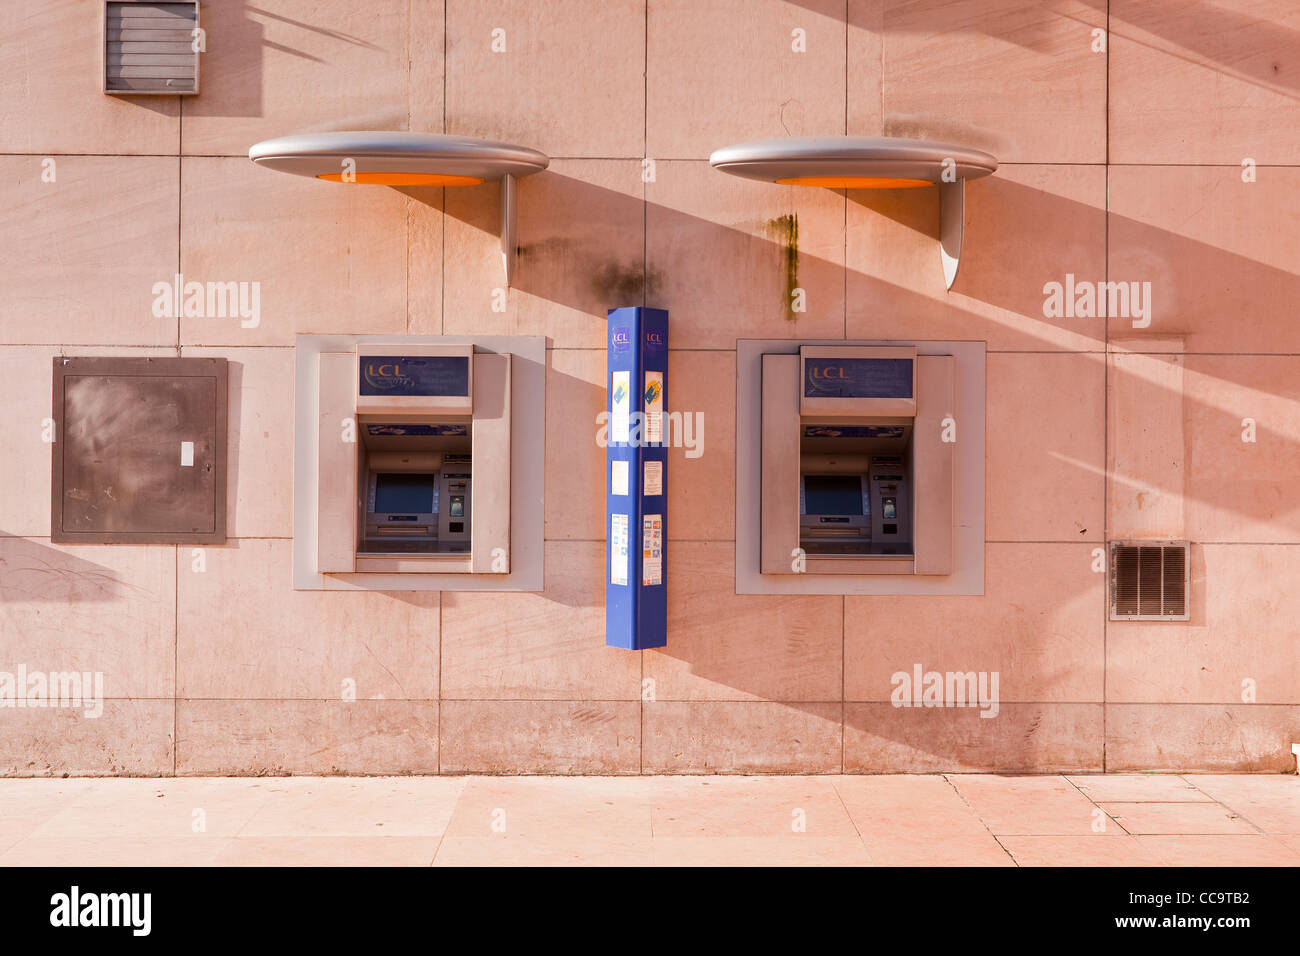 Lcl banque Banque de photographies et d'images à haute résolution - Alamy